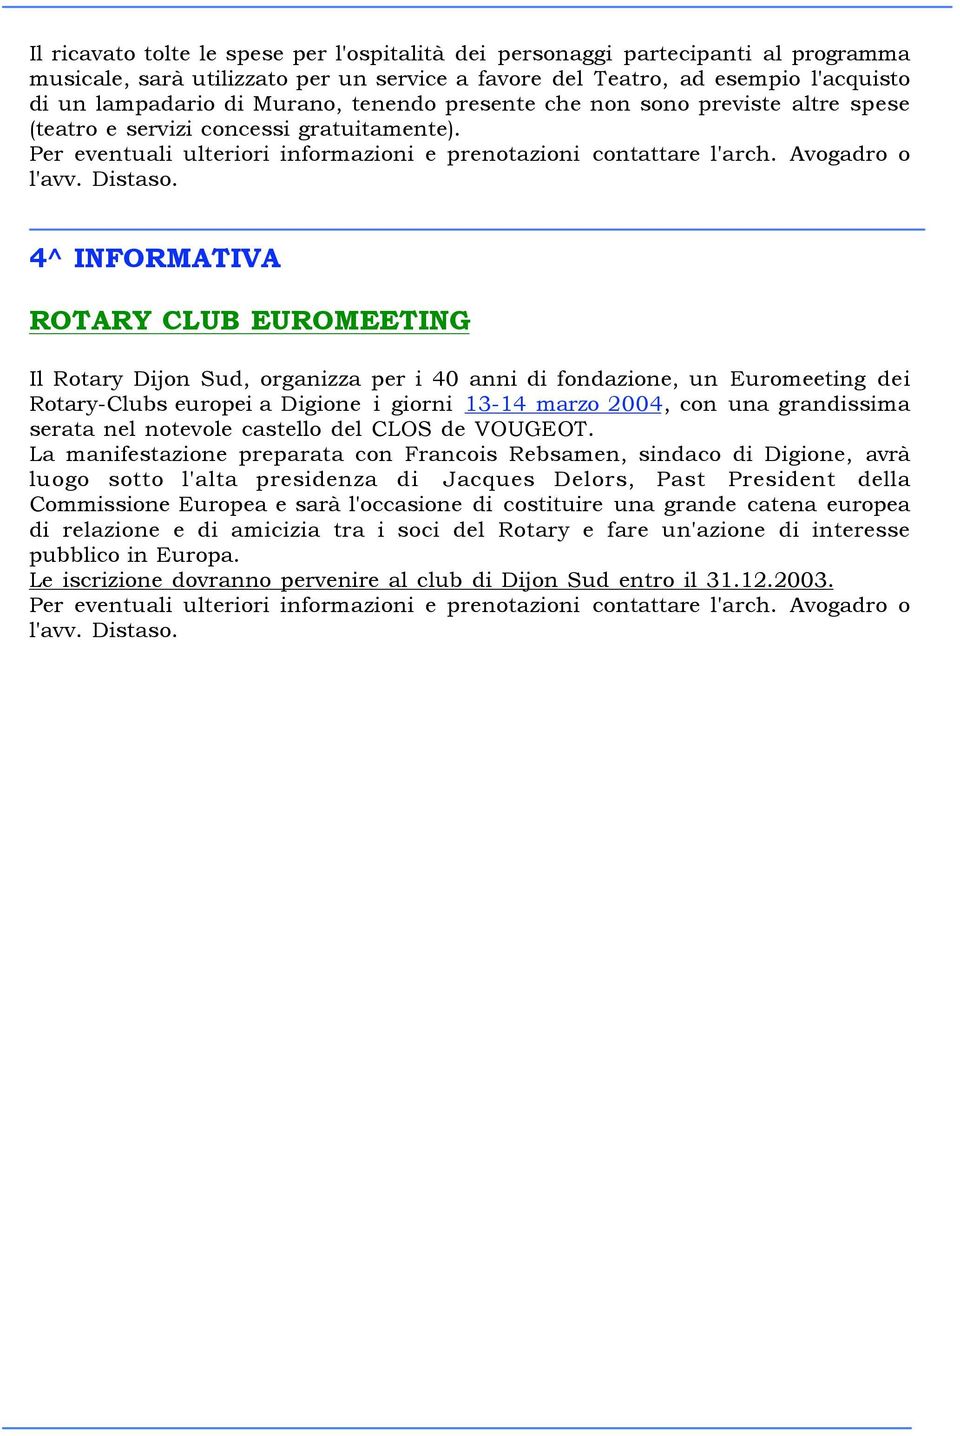 4^ INFORMATIVA ROTARY CLUB EUROMEETING Il Rotary Dijon Sud, organizza per i 40 anni di fondazione, un Euromeeting dei Rotary-Clubs europei a Digione i giorni 13-14 marzo 2004, con una grandissima